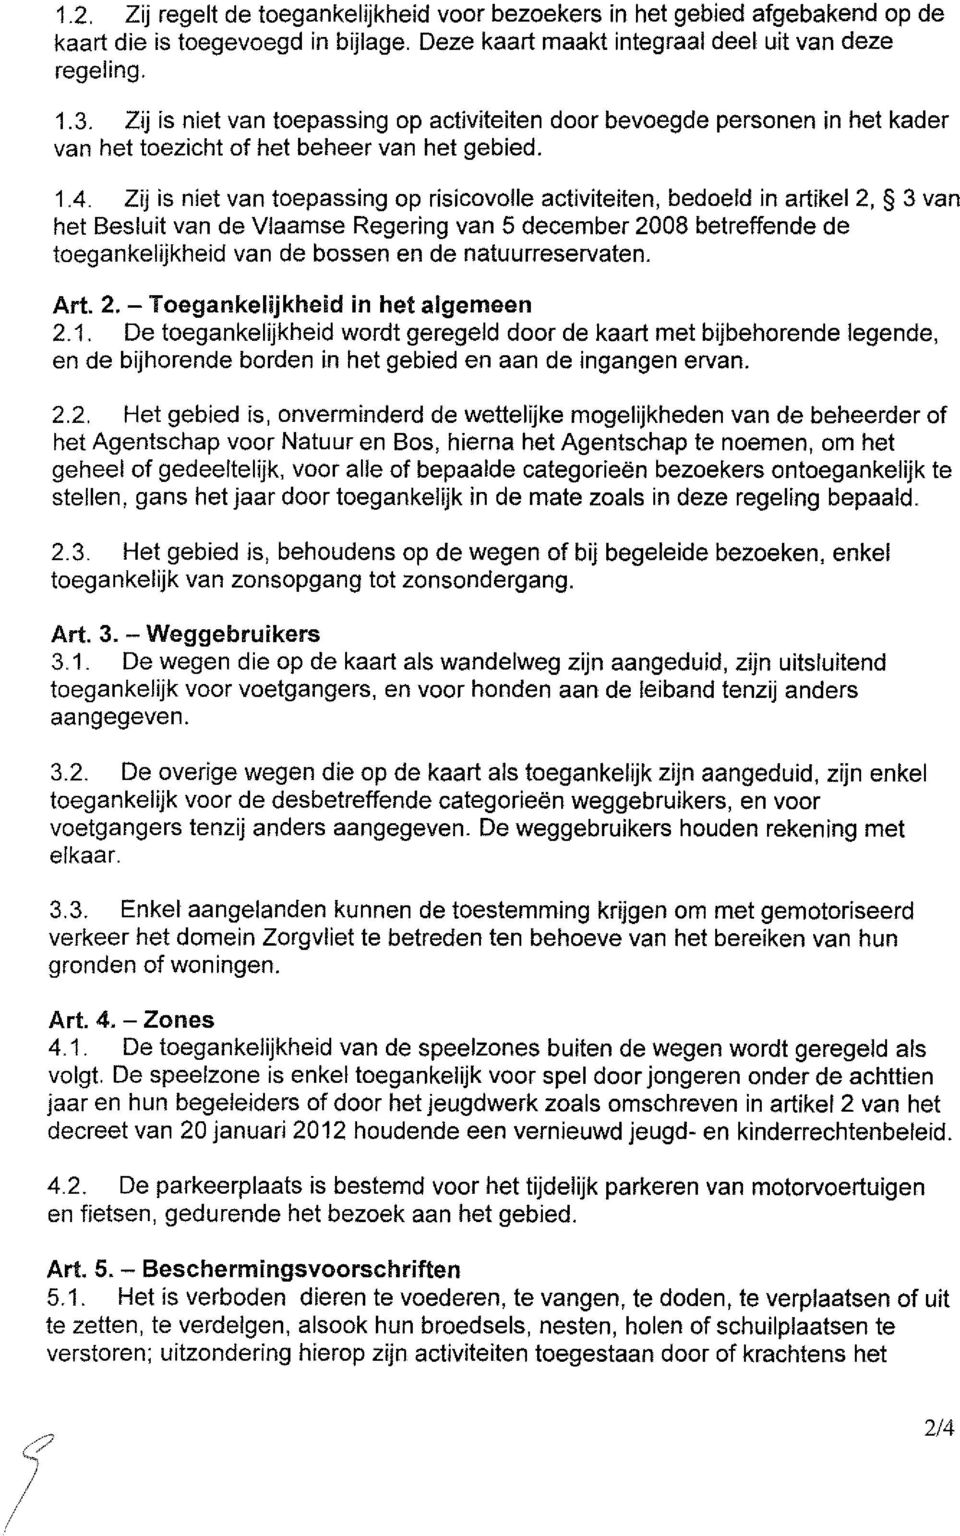 Zij is niet van toepassing op risicovolle activiteiten, bedoeld in artikel 2, 3 van het Besluit van de Vlaamse Regering van 5 december 2008 betreffende de toegankelijkheid van de bossen en de